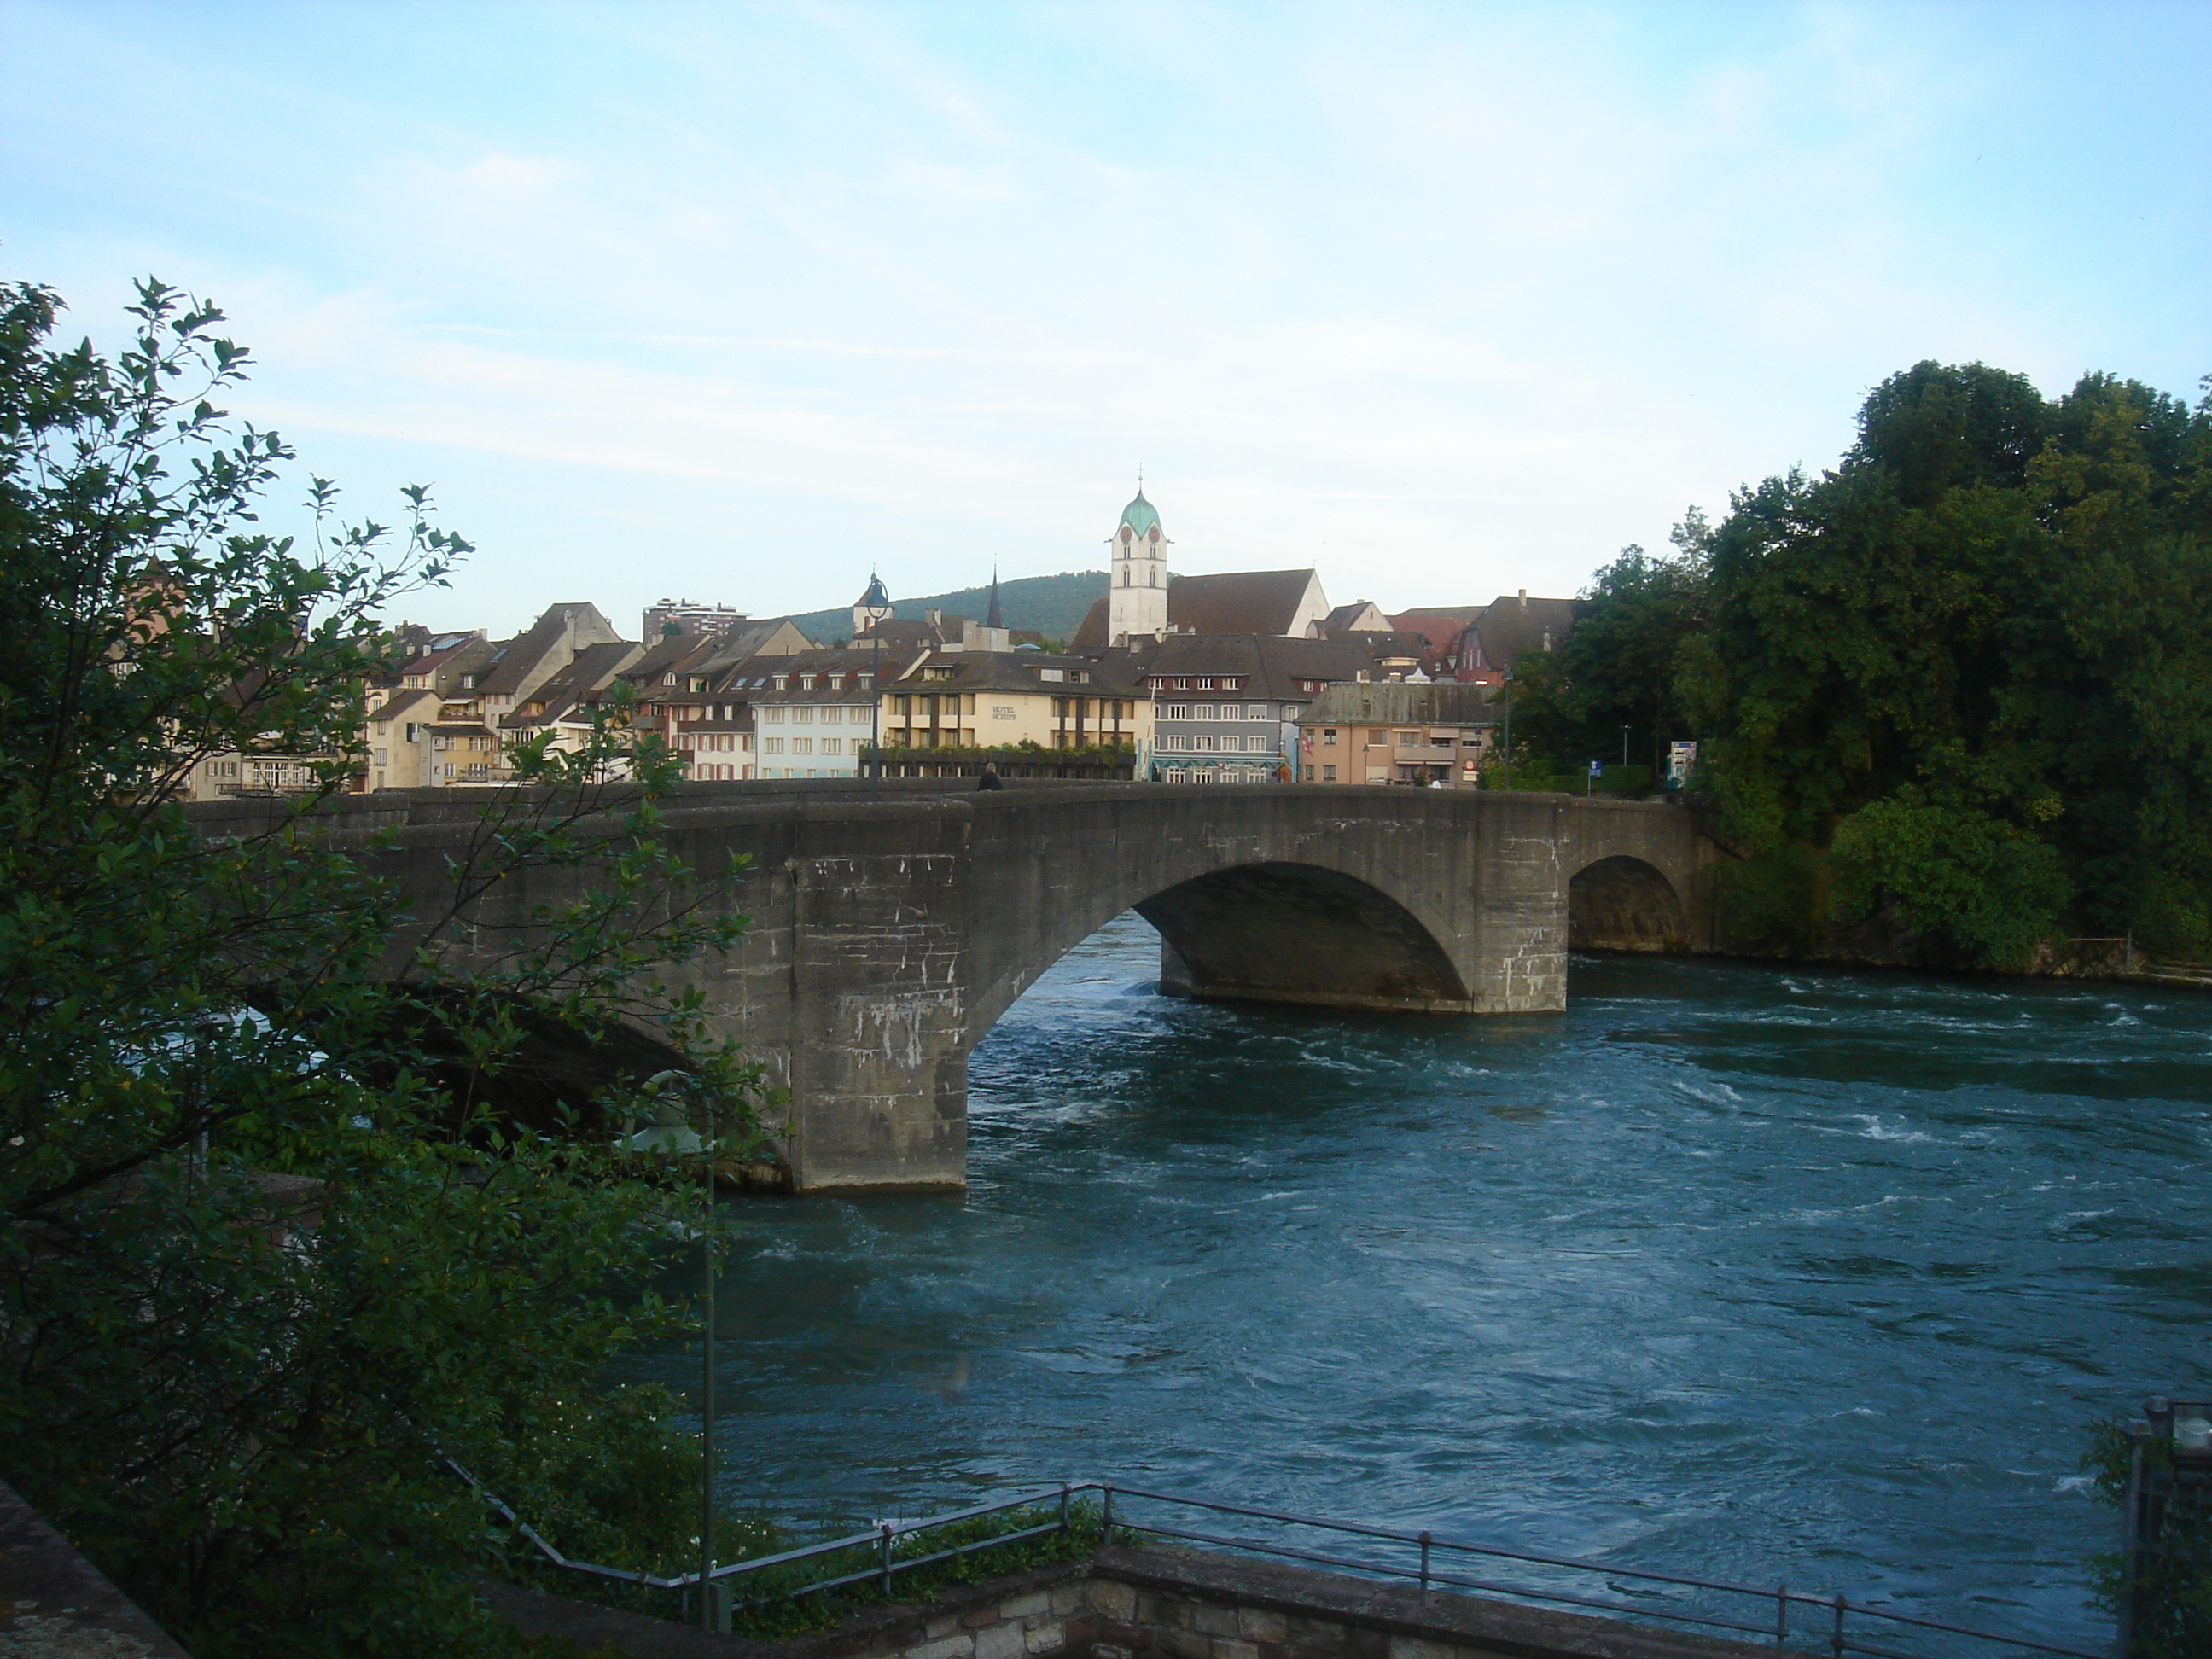 Bron emellan Schweiz och Tyskland ver en sidoarm av floden Rhen